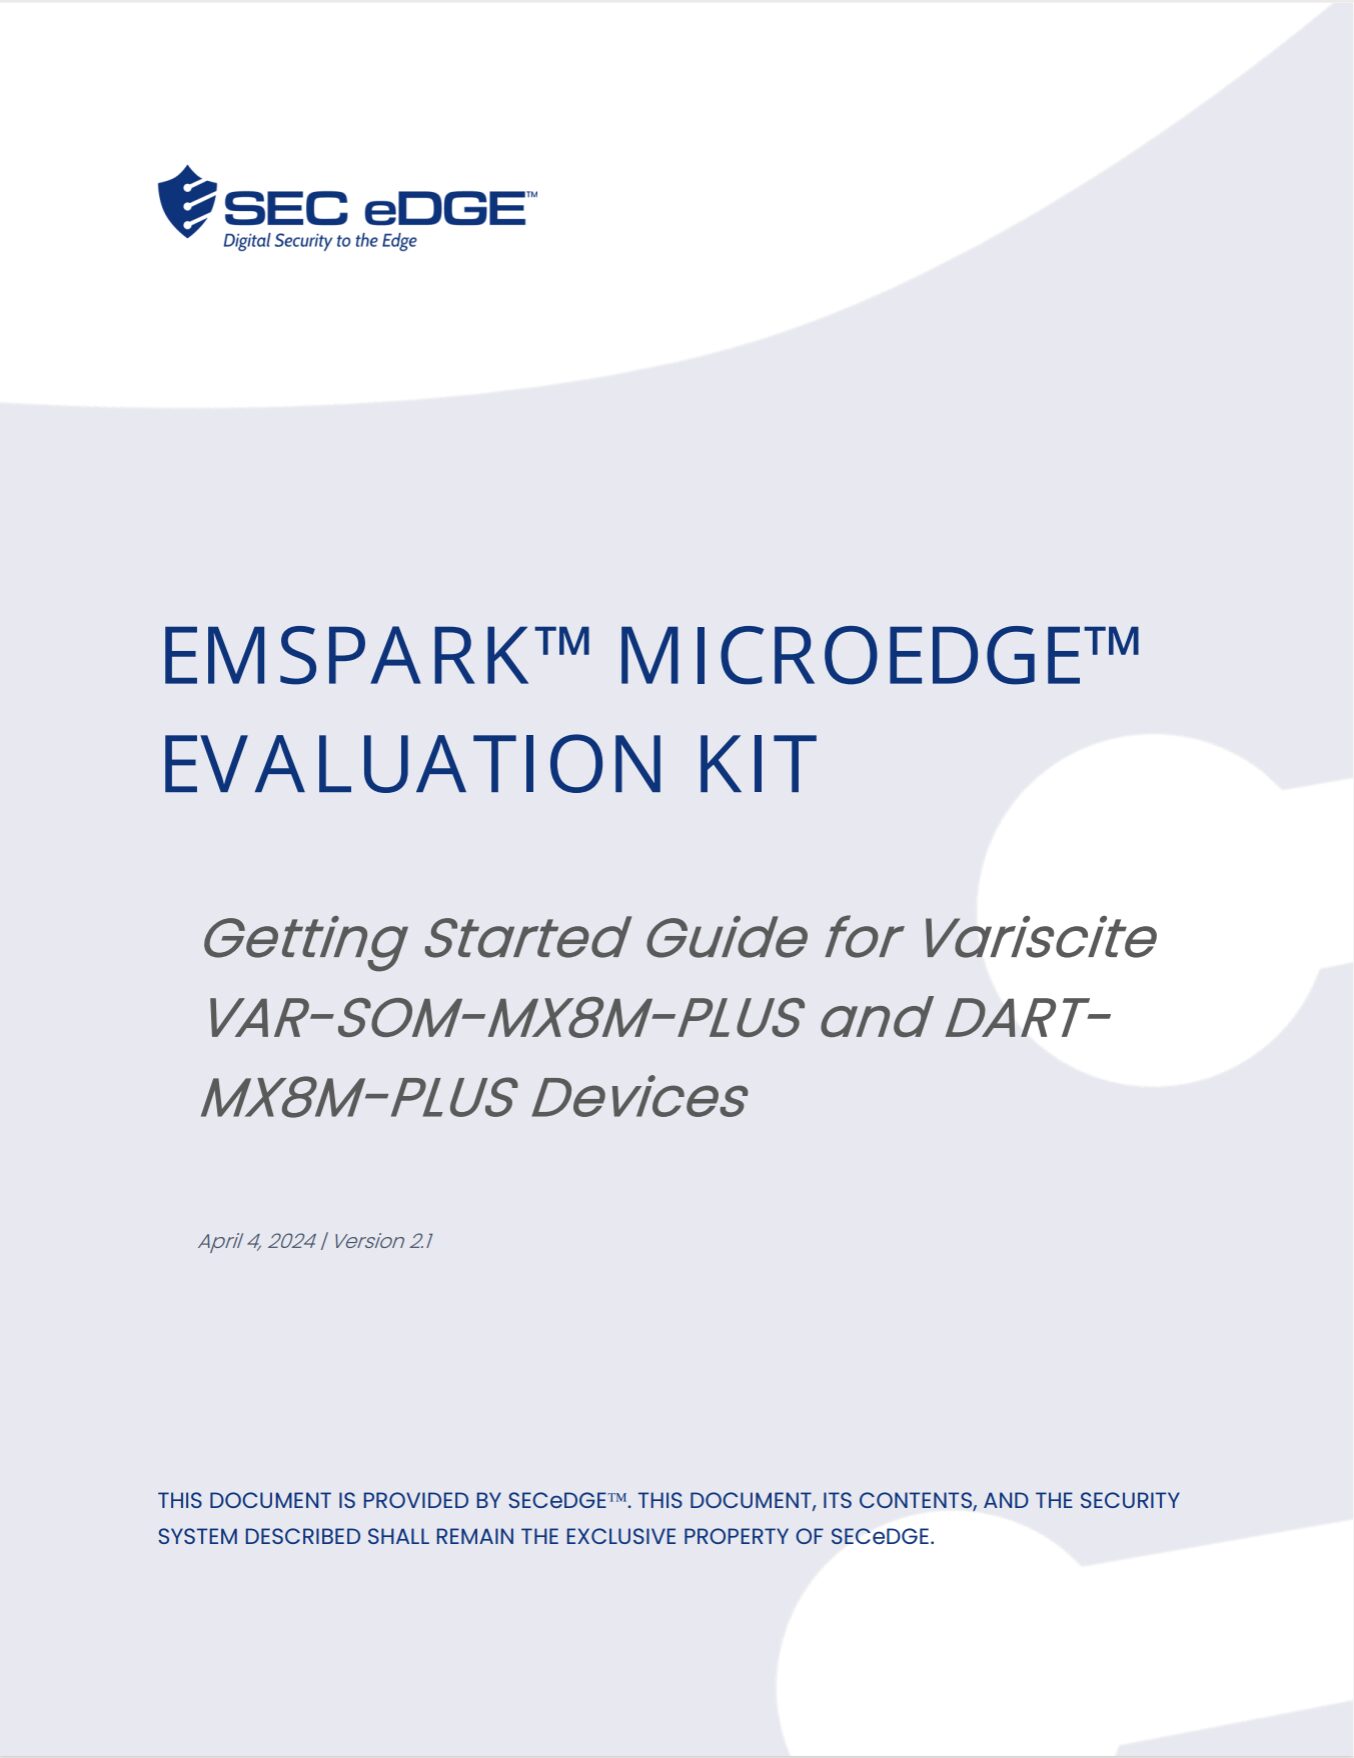 Variscite EmSPARK™ Security Suite CoreLOCKR™ Libraries User Guide version 2.1